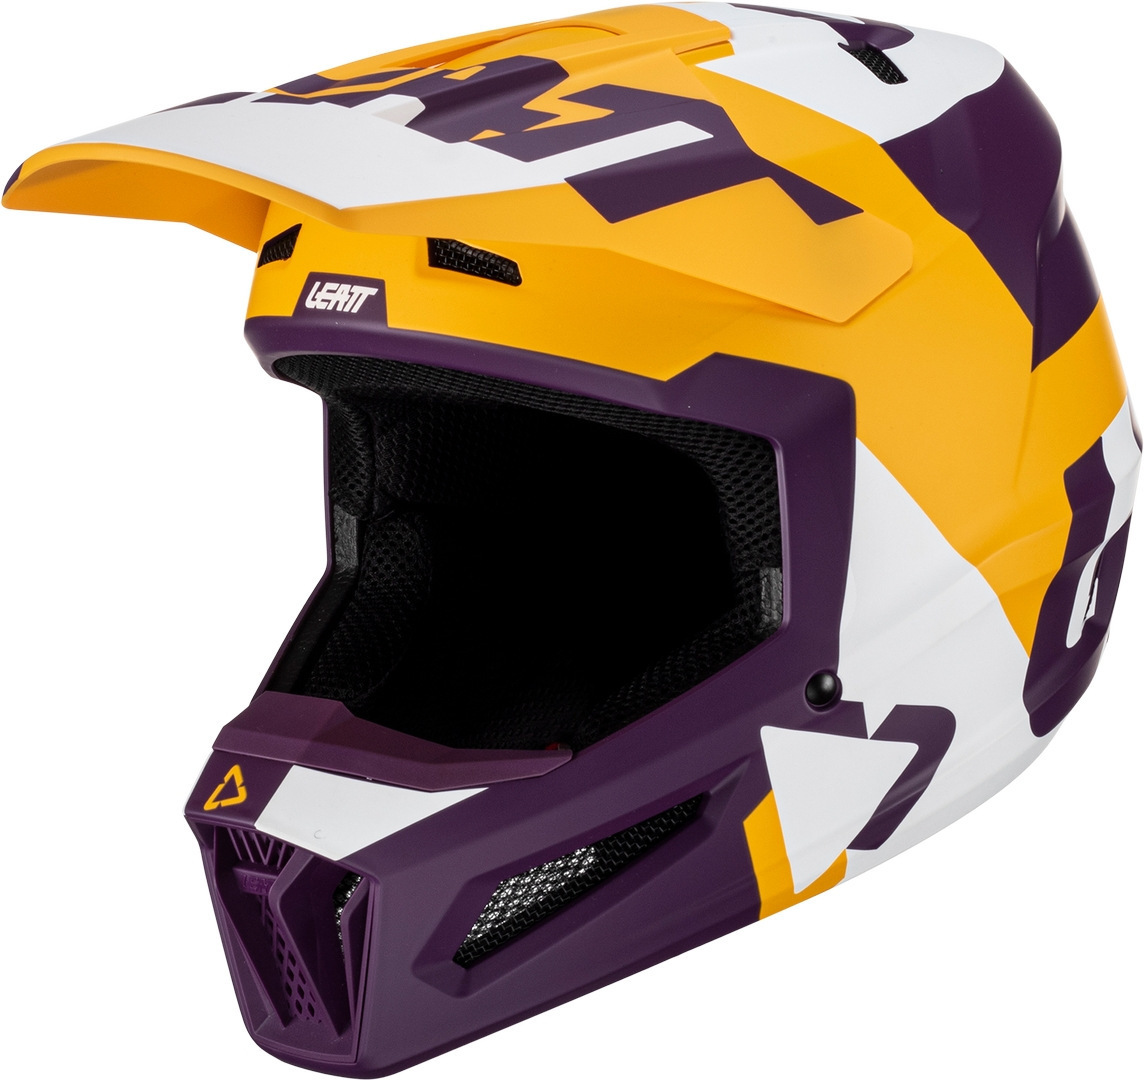 Leatt 2.5 Tricolor Motocross Helm, lila-gelb, Größe XS